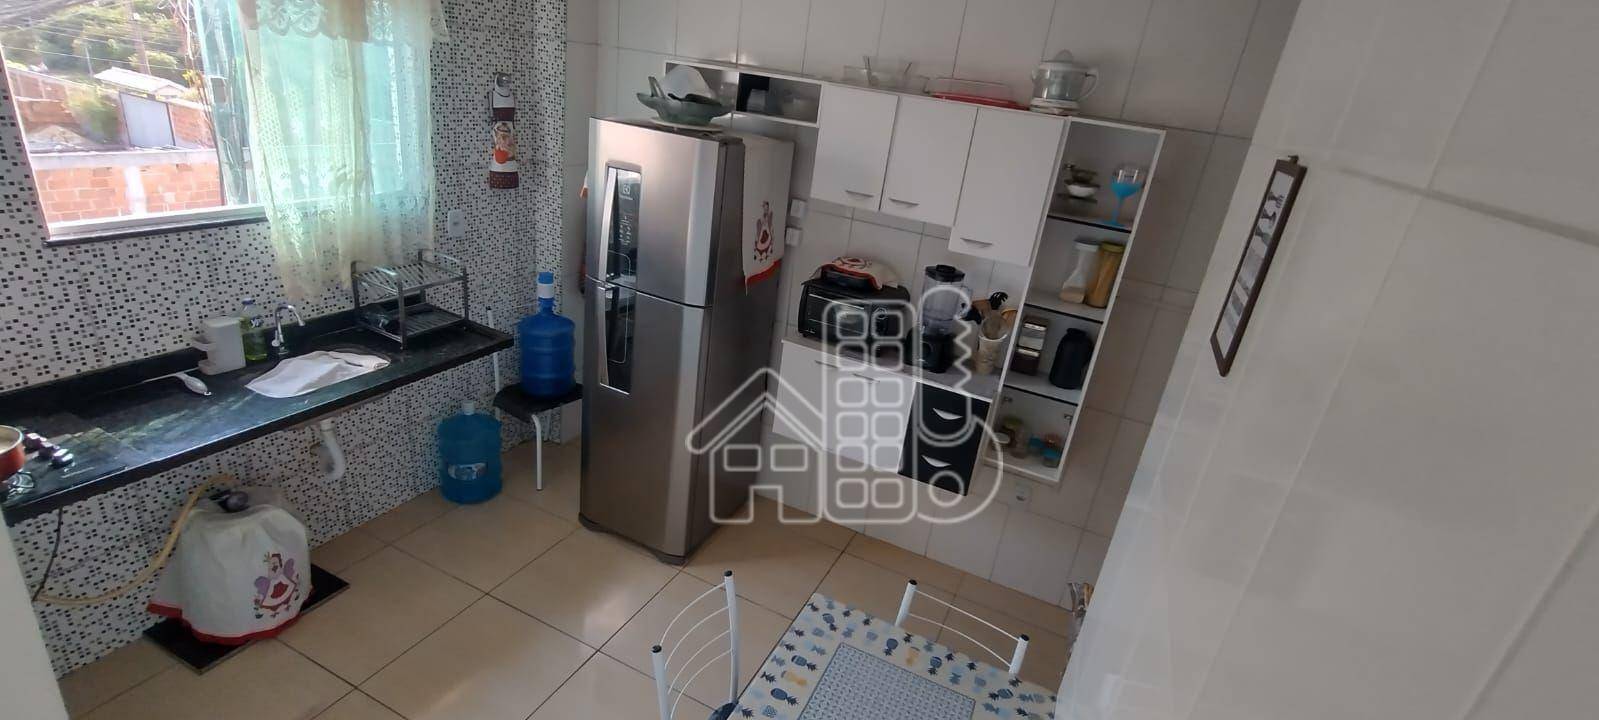 Apartamento à venda, 61 m² por R$ 240.000,00 - Jardim Atlântico Leste (Itaipuaçu) - Maricá/RJ